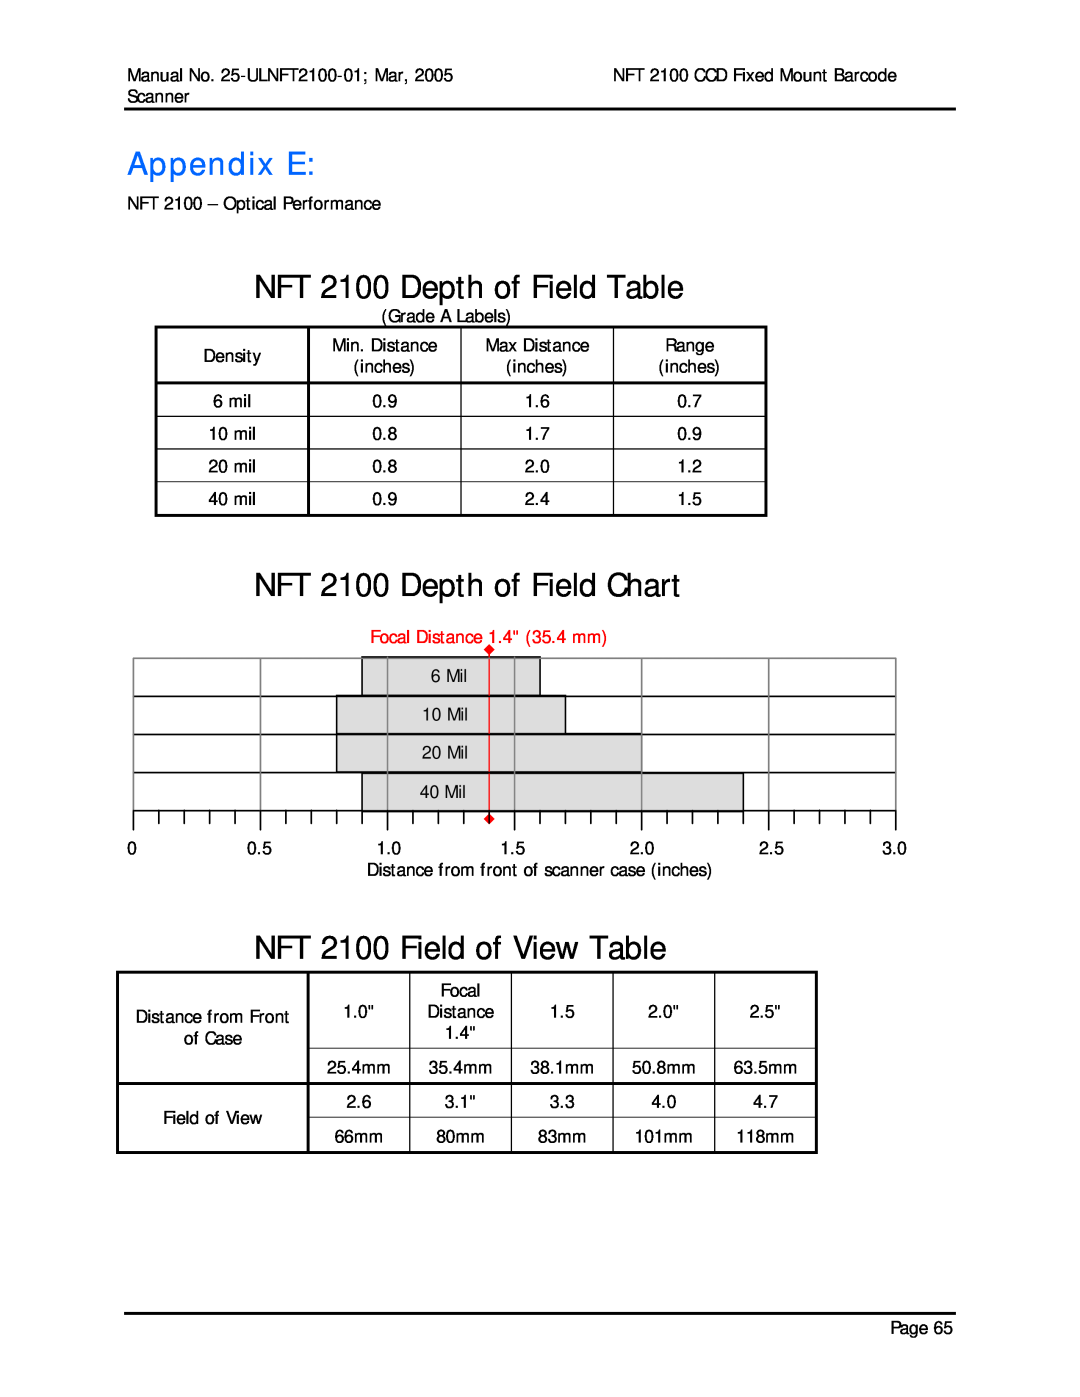 Opticon manual Appendix E, NFT 2100 Depth of Field Table, NFT 2100 Depth of Field Chart, NFT 2100 Field of View Table 